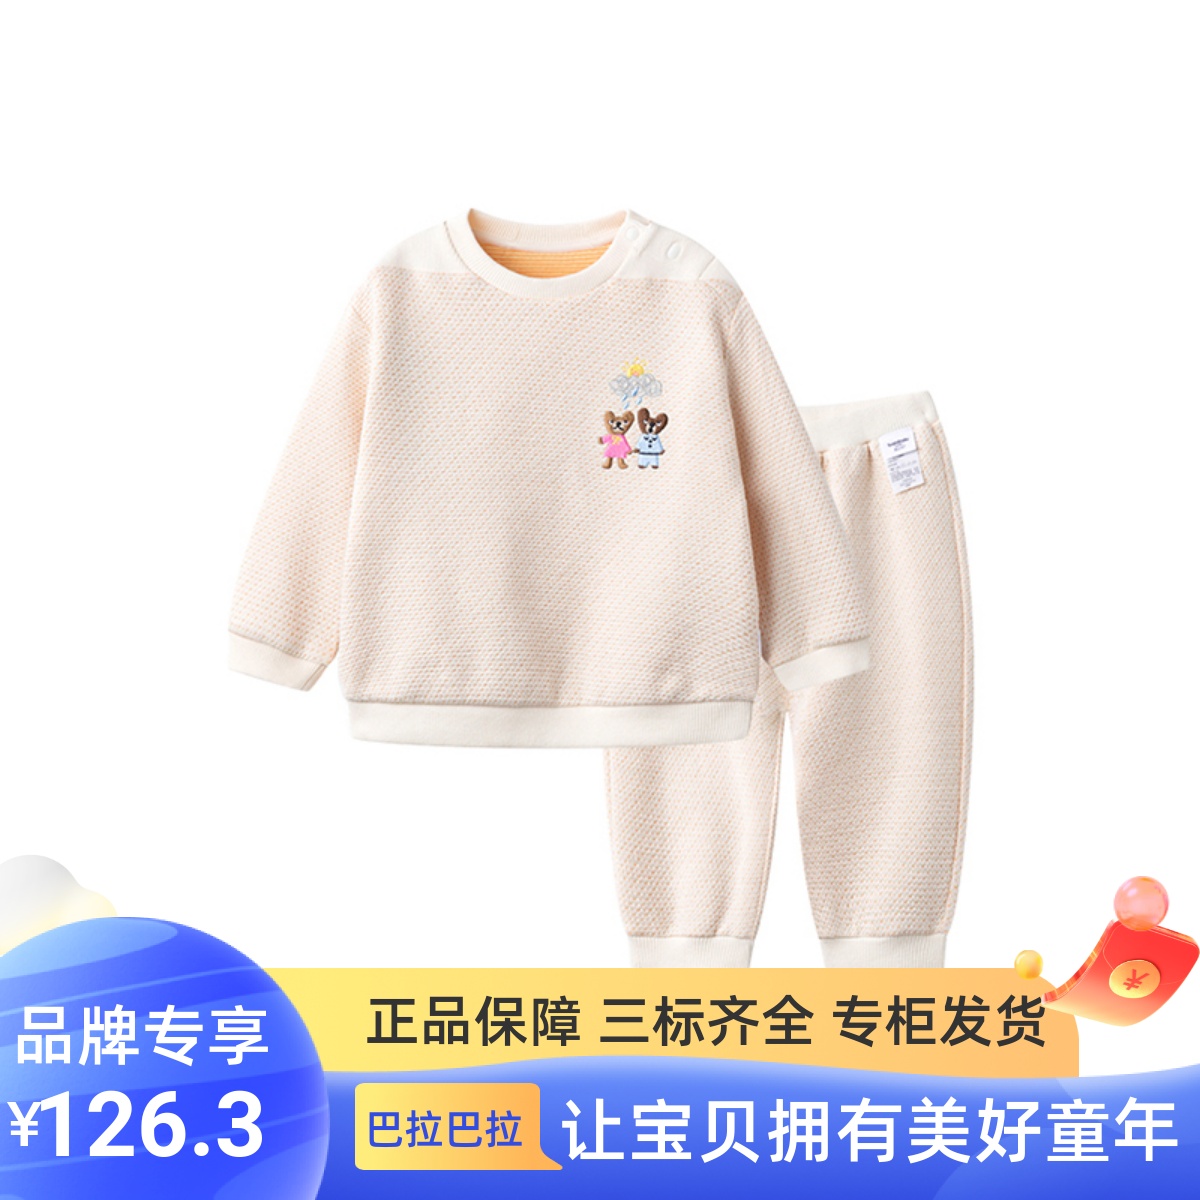 巴拉巴拉男宝宝长袖套装春装婴儿衣服两件套200123104102